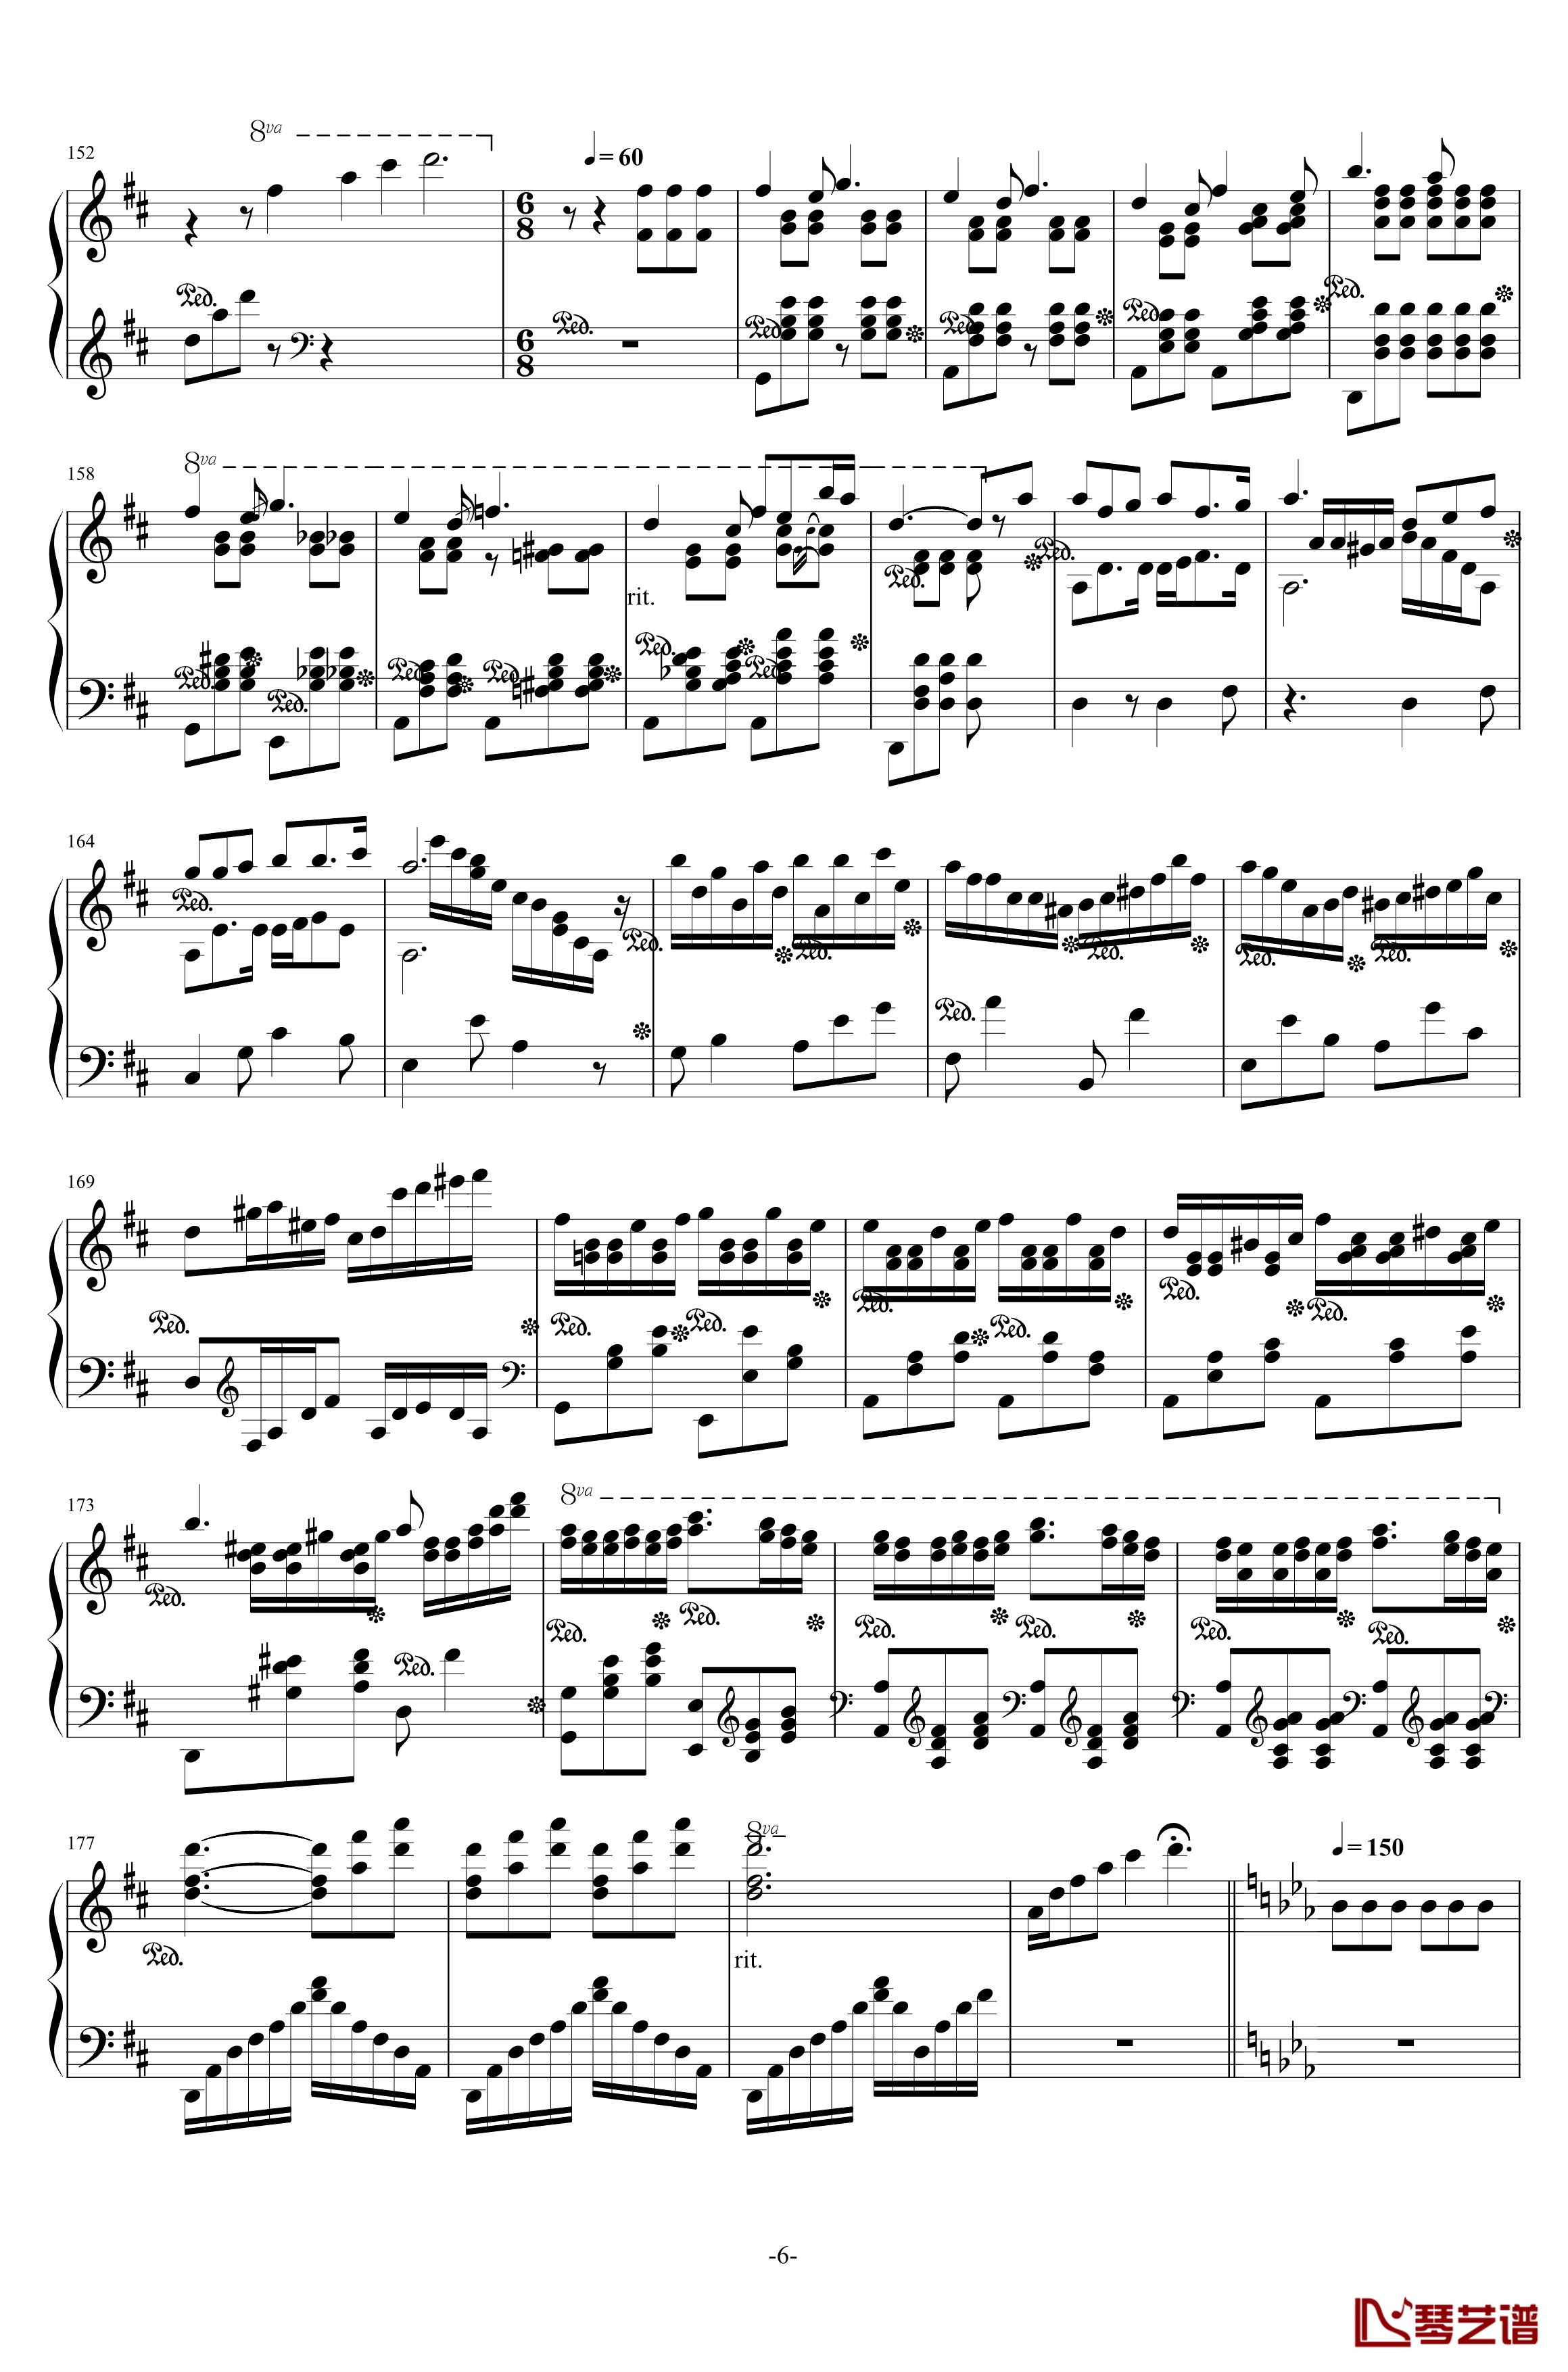 西安音乐学院校歌钢琴谱-校园歌曲6